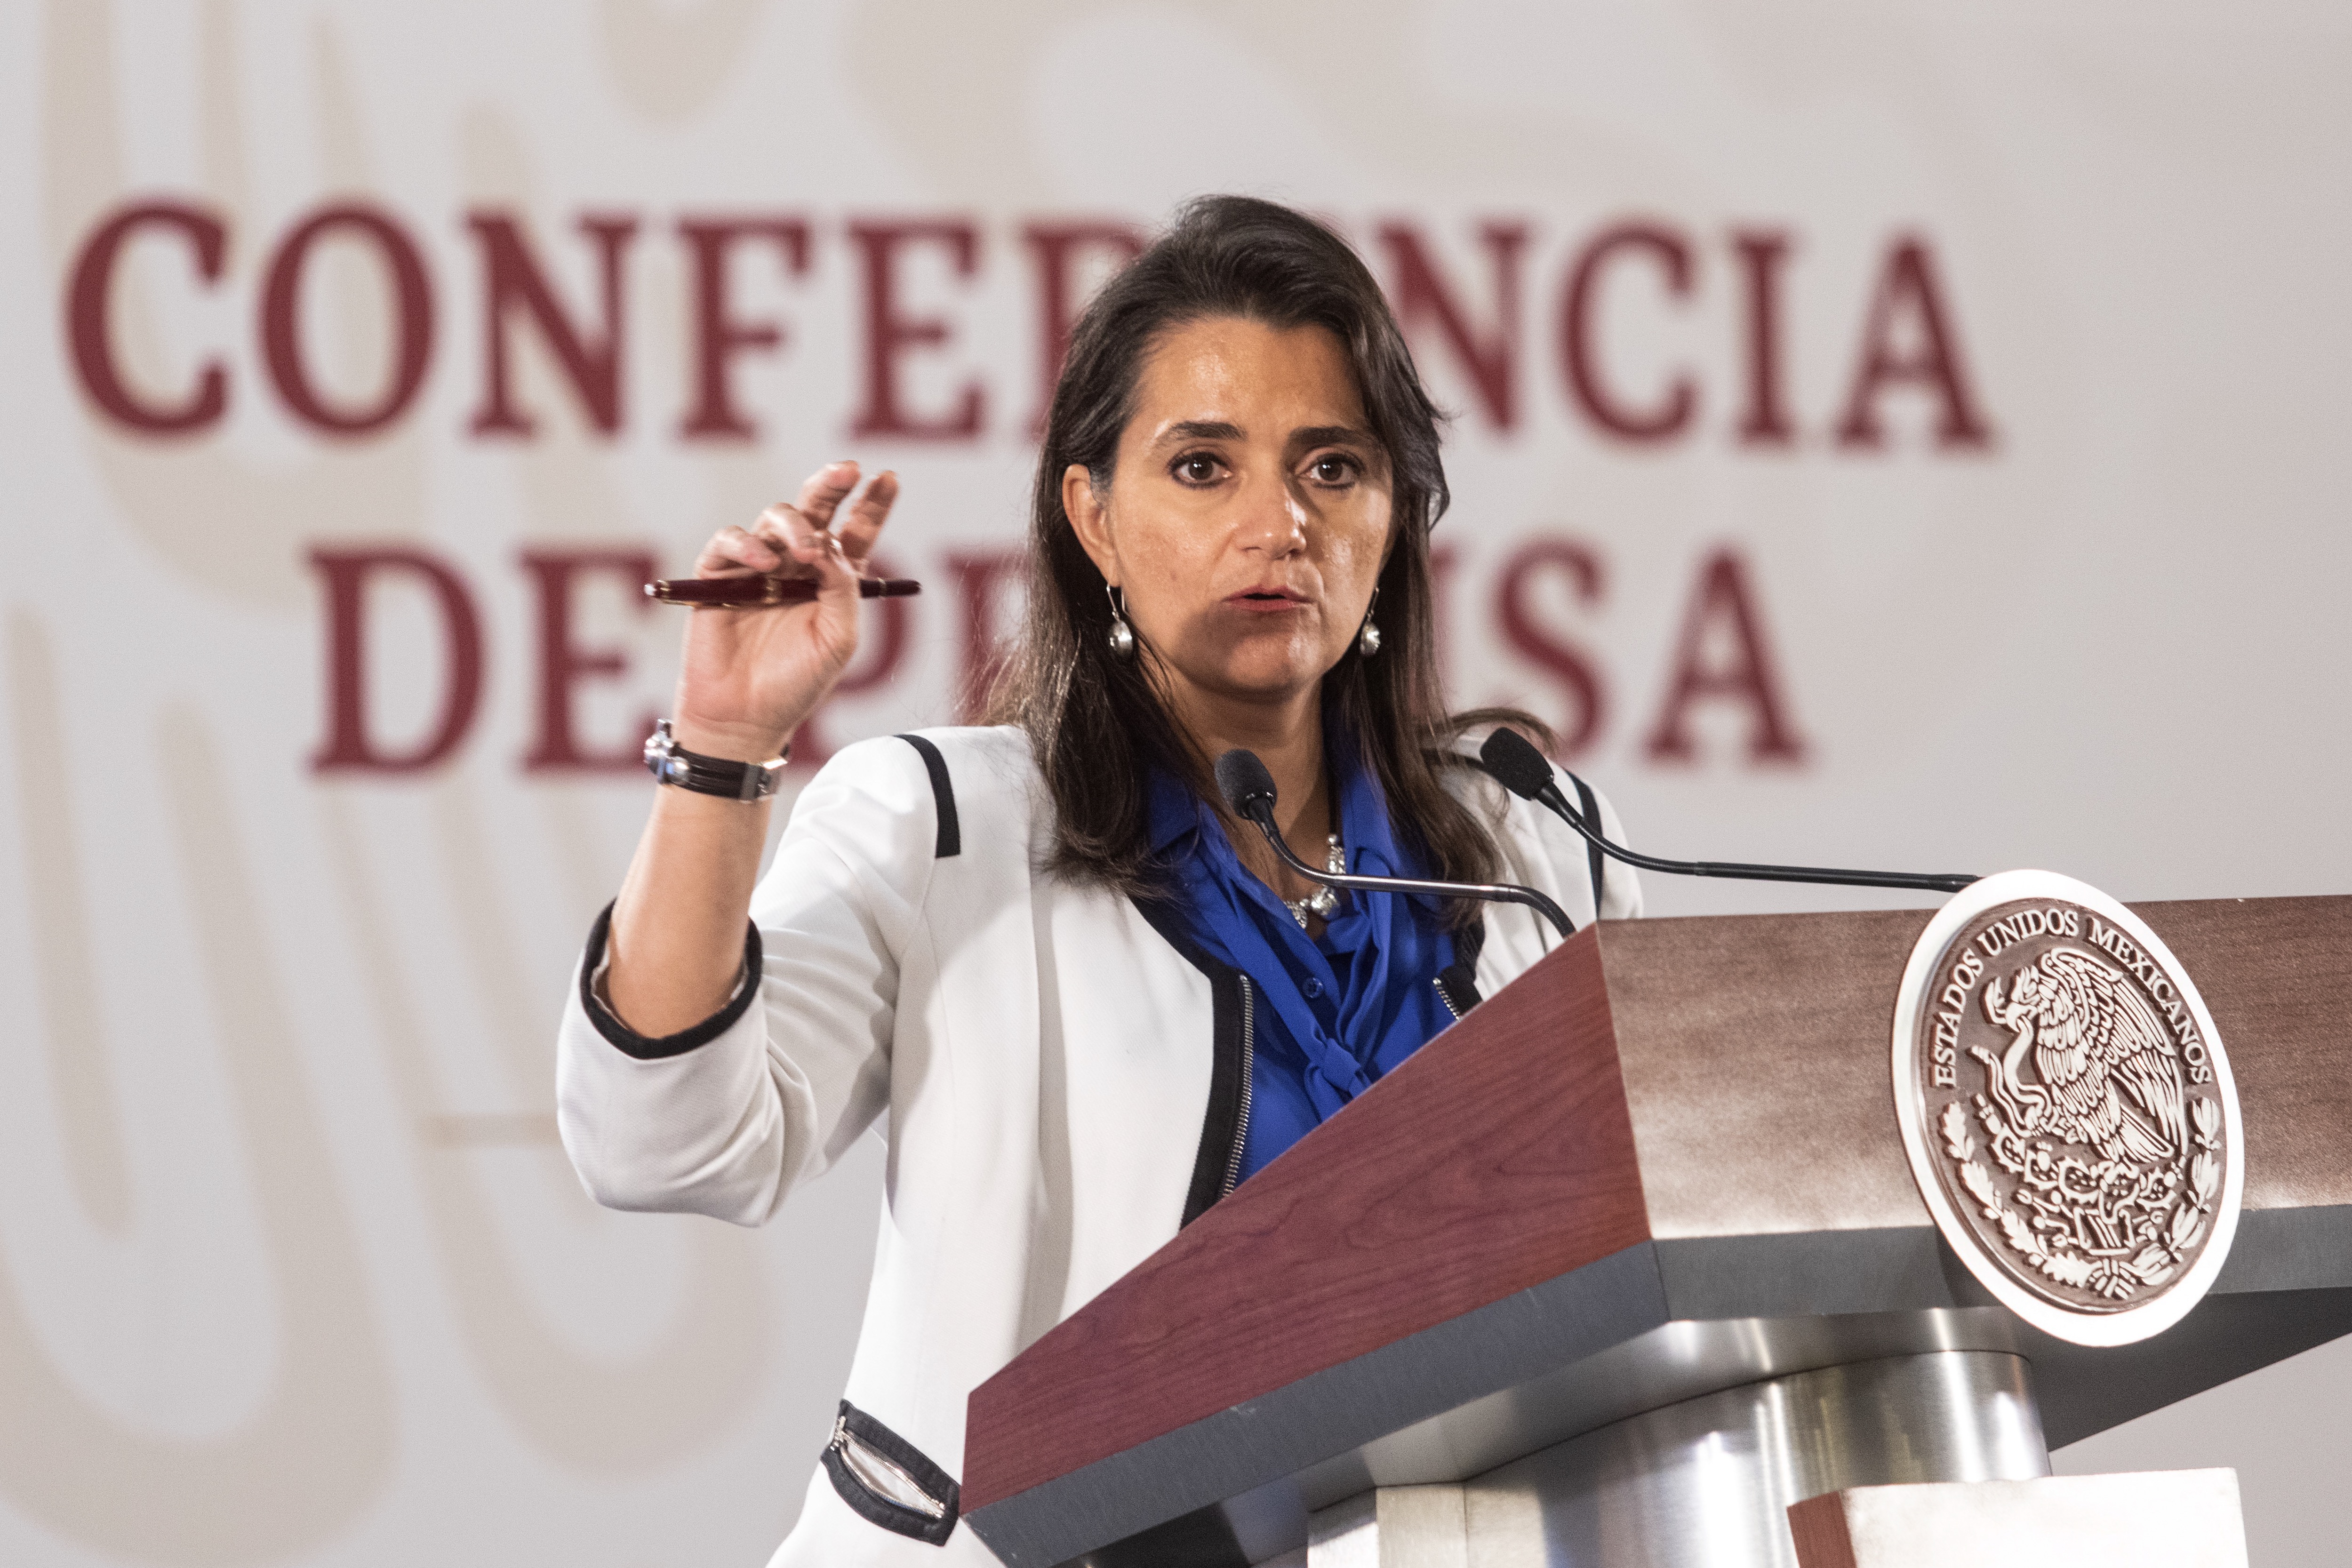 La ministra Margarita Ríos-Farjat fue la encargada de promover el proyecto (Foto: Cuartoscuro)